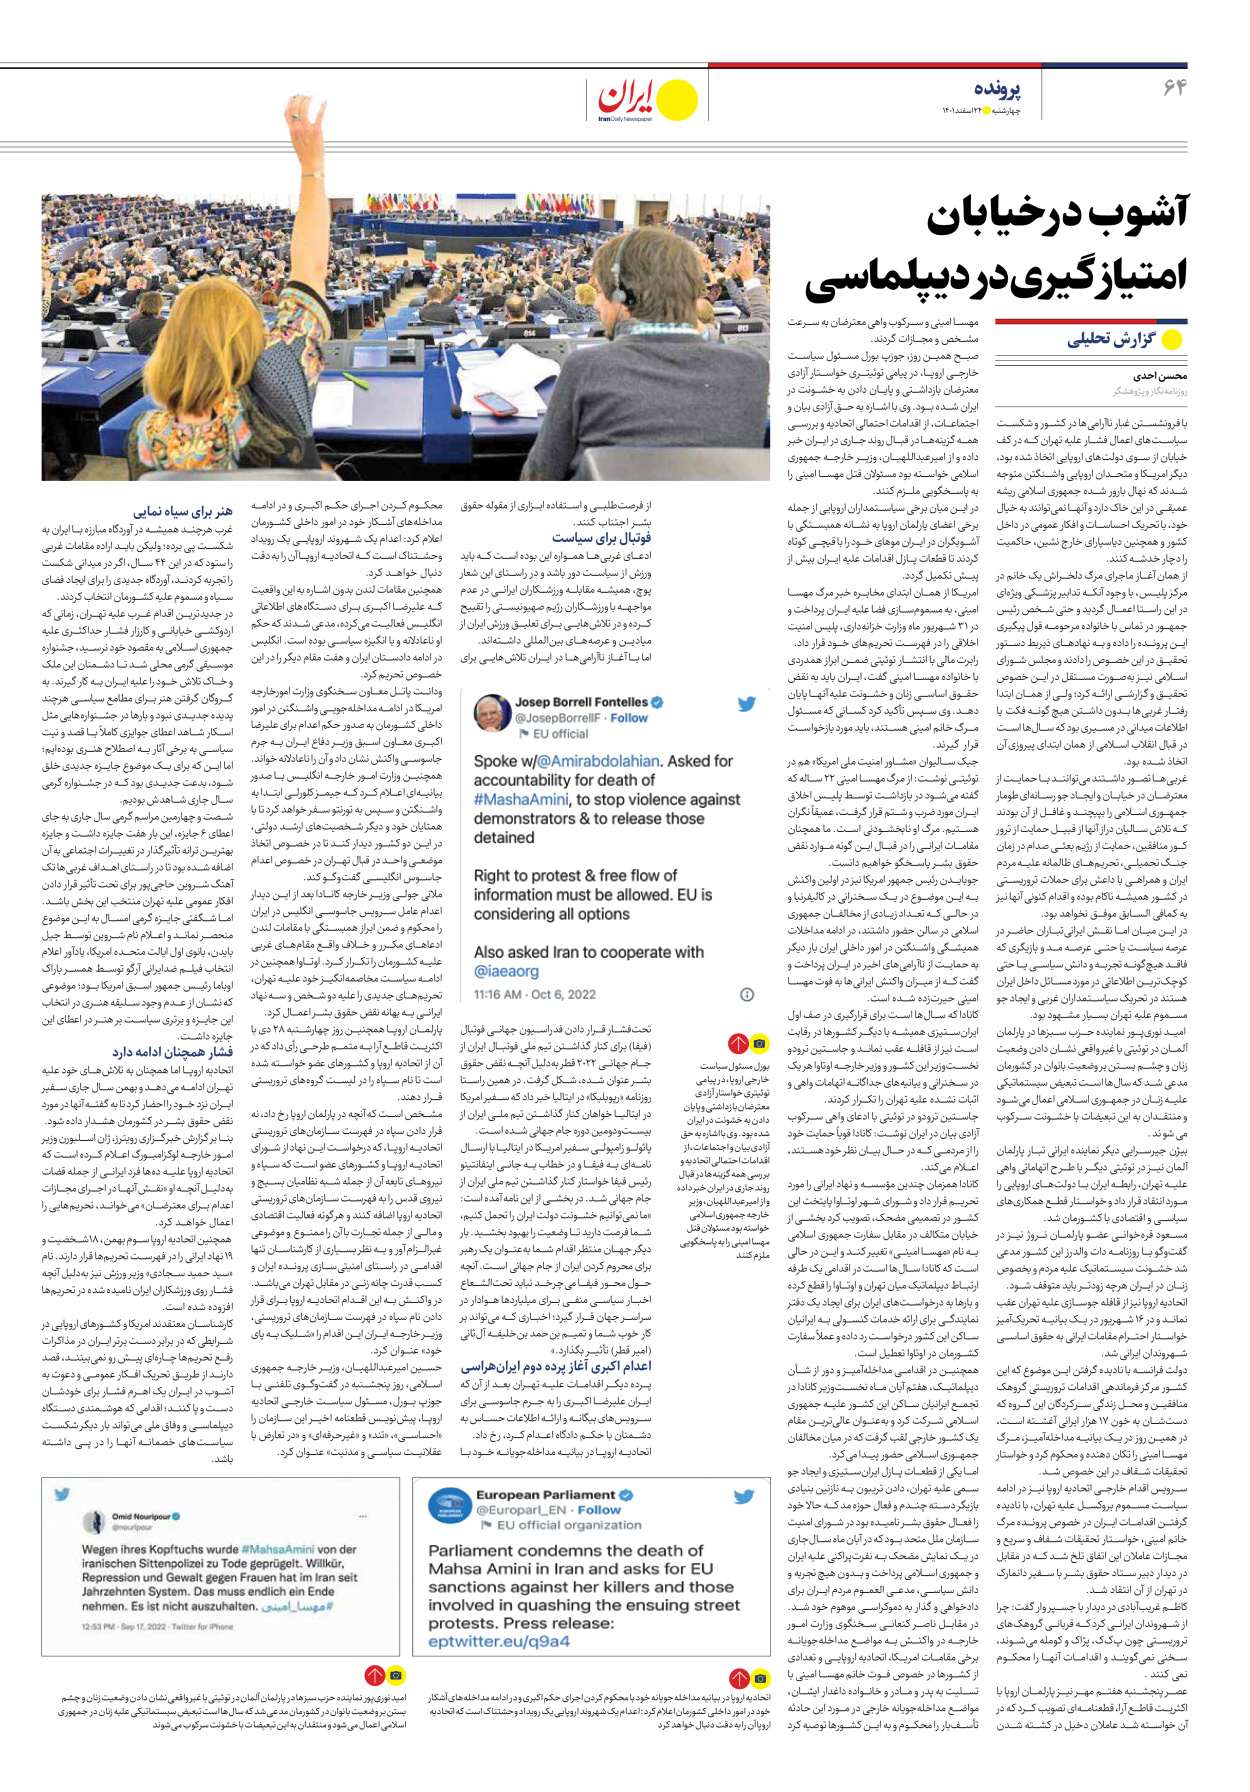 روزنامه ایران - ویژه نامه ویژه نوروز - ۲۴ اسفند ۱۴۰۱ - صفحه ۶۴